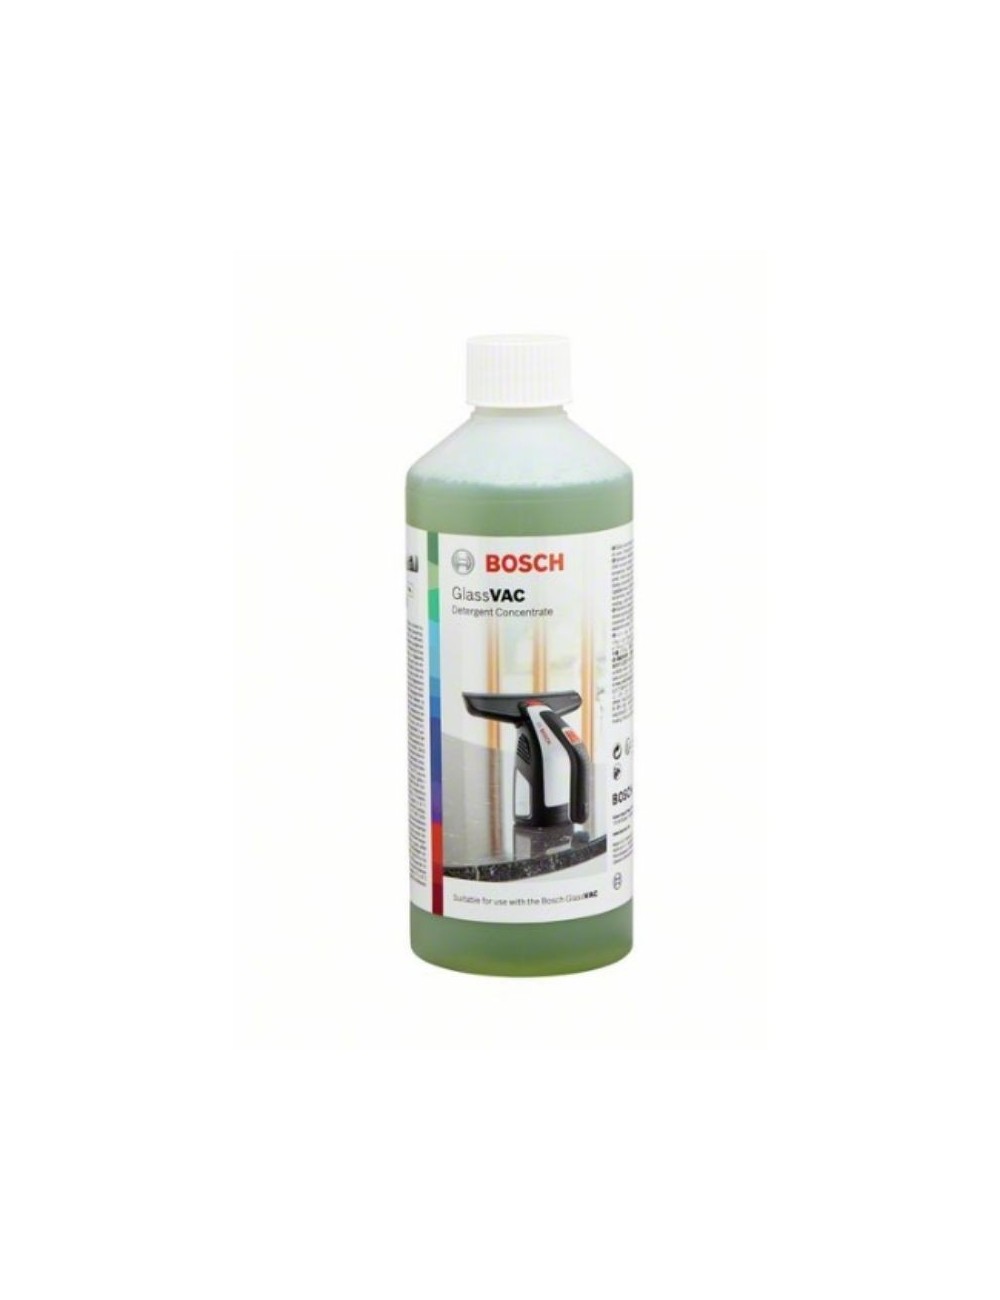 Accesorios Bosch GlassVAC: detergente concentrado, 500 ml